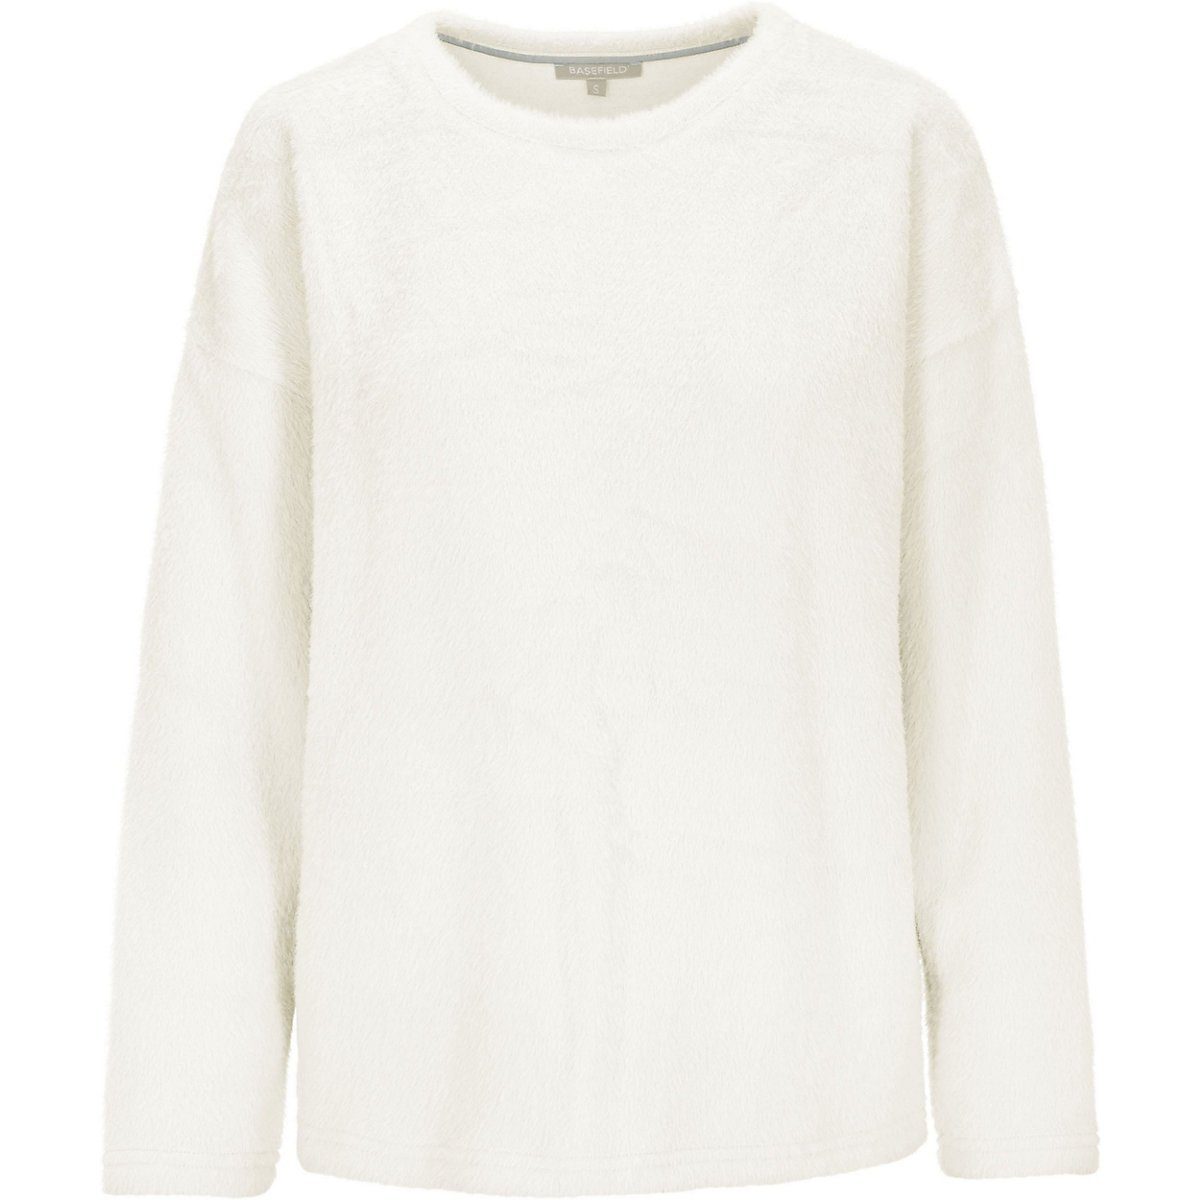 BASEFIELD Sweatshirt Susanne Sweatshirt, Obermaterial: 55% Polyamid, 45%  Polyester online kaufen | OTTO